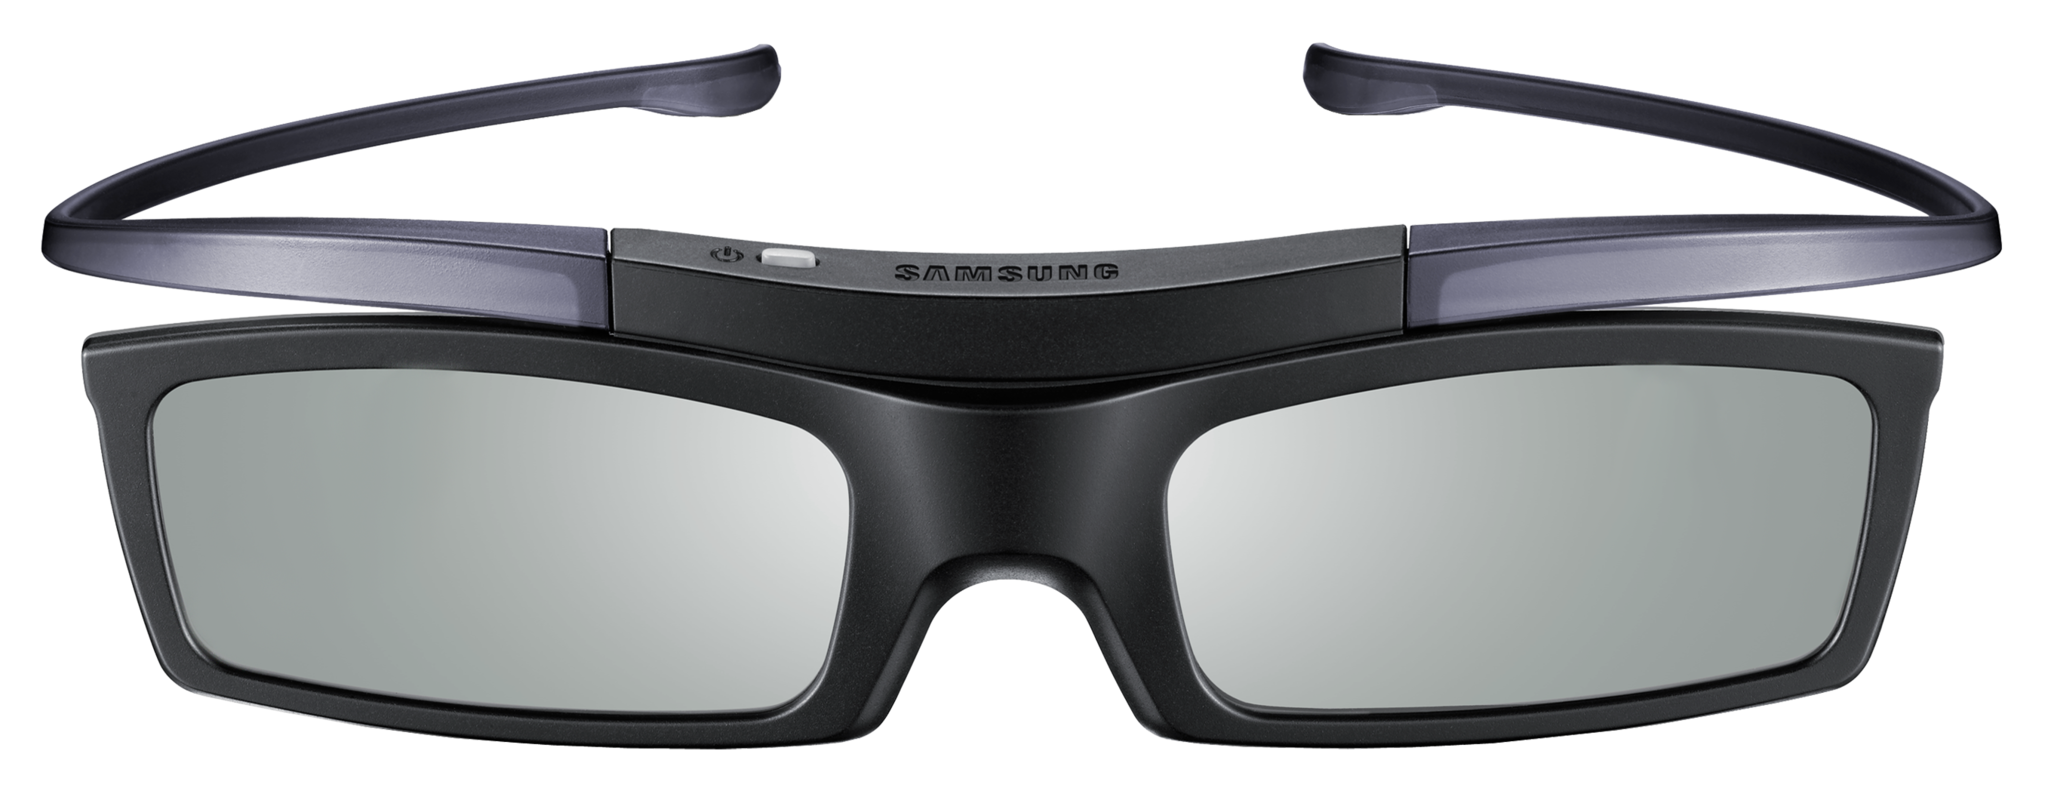 Samsung SSG-5100gb. 3d-очки для телевизора Samsung SSG-5100gb. Samsung SSG 5100gb 3d. Очки 3d Active Glasses Samsung. Очки 3 мужские купить